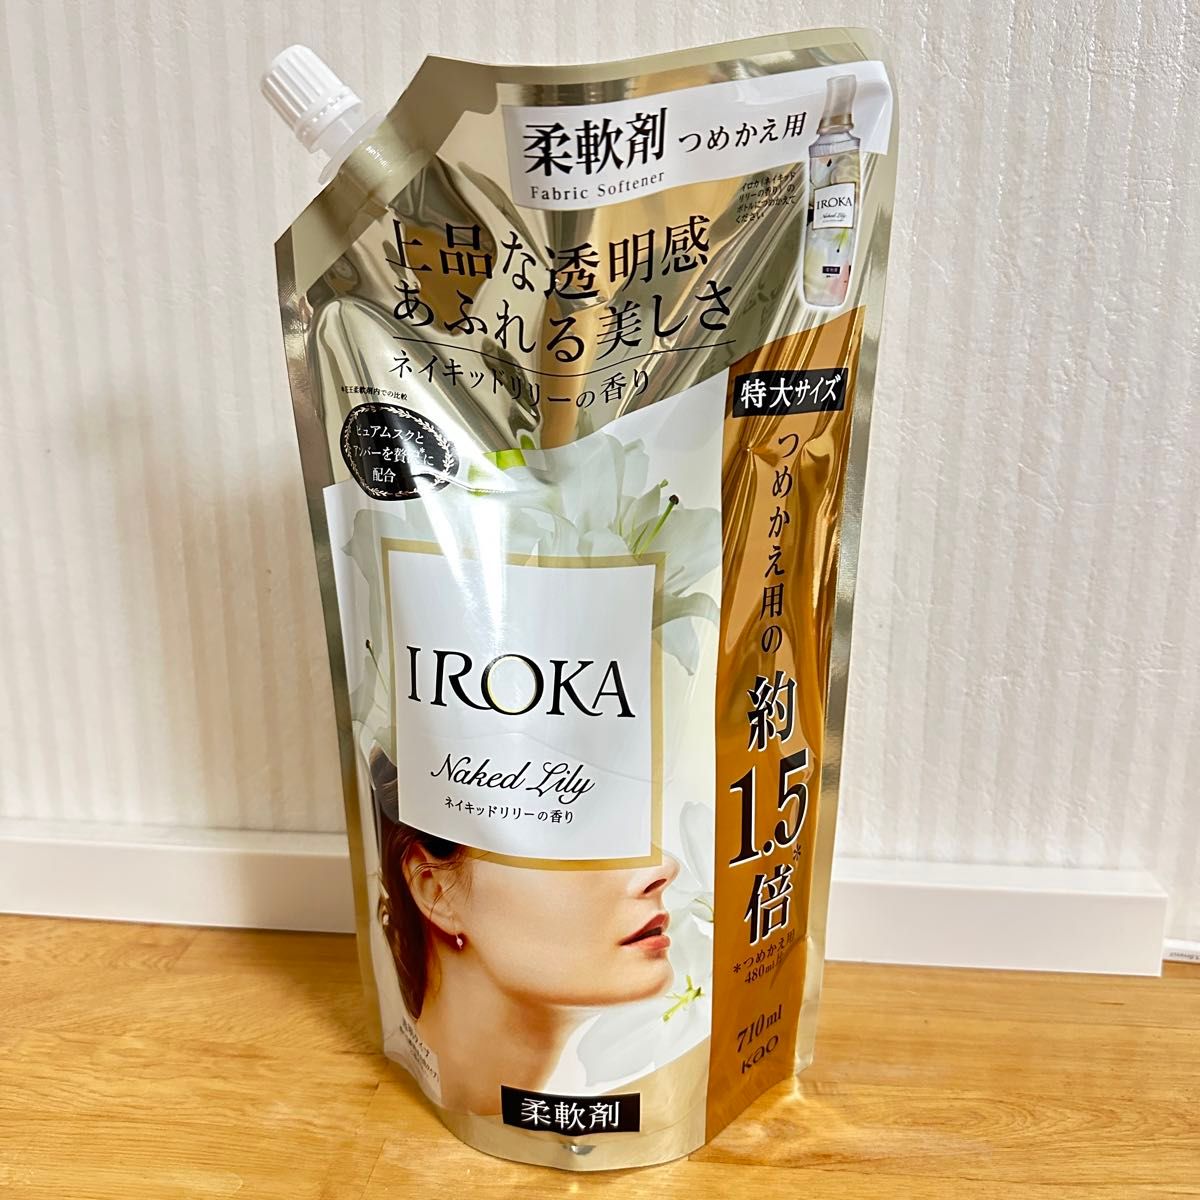 【新品お得セット】IROKA 柔軟剤 ネイキッドリリーの香り 710ml(通常の約1.5倍) ×15袋